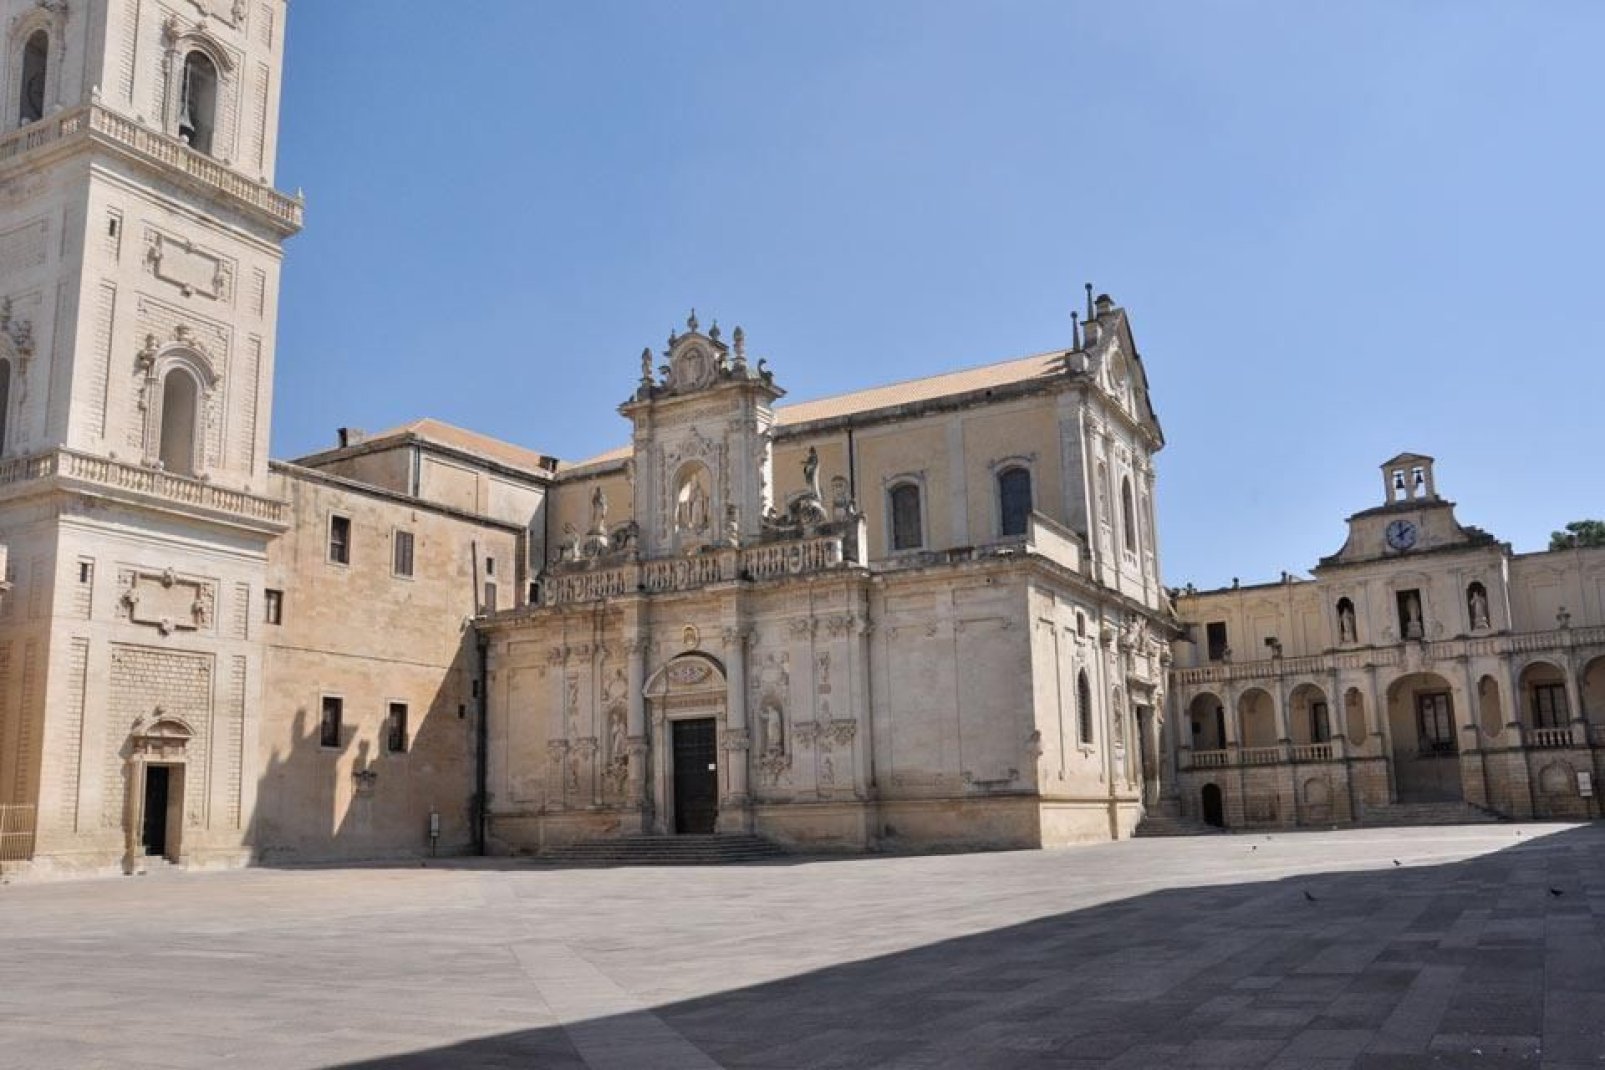 El obispado, adyacente a la catedral, es la residencia del obispo de Lecce. Se trata de un palacio erigido en el siglo XV.